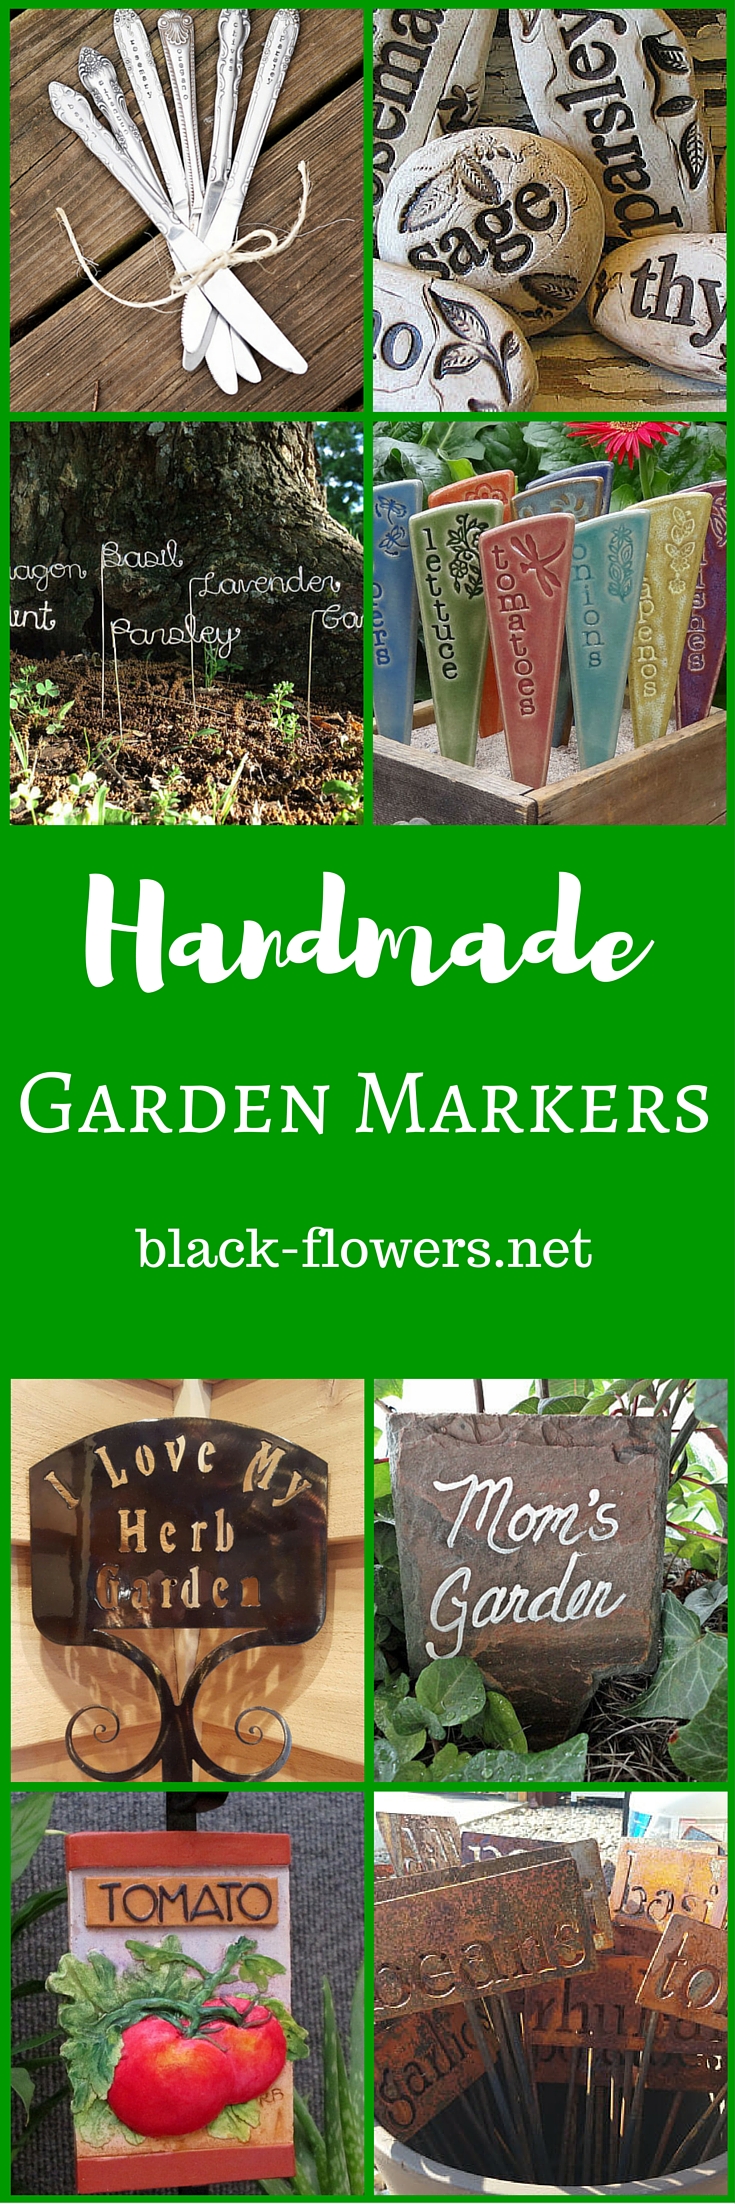 Handmade Garden Markers